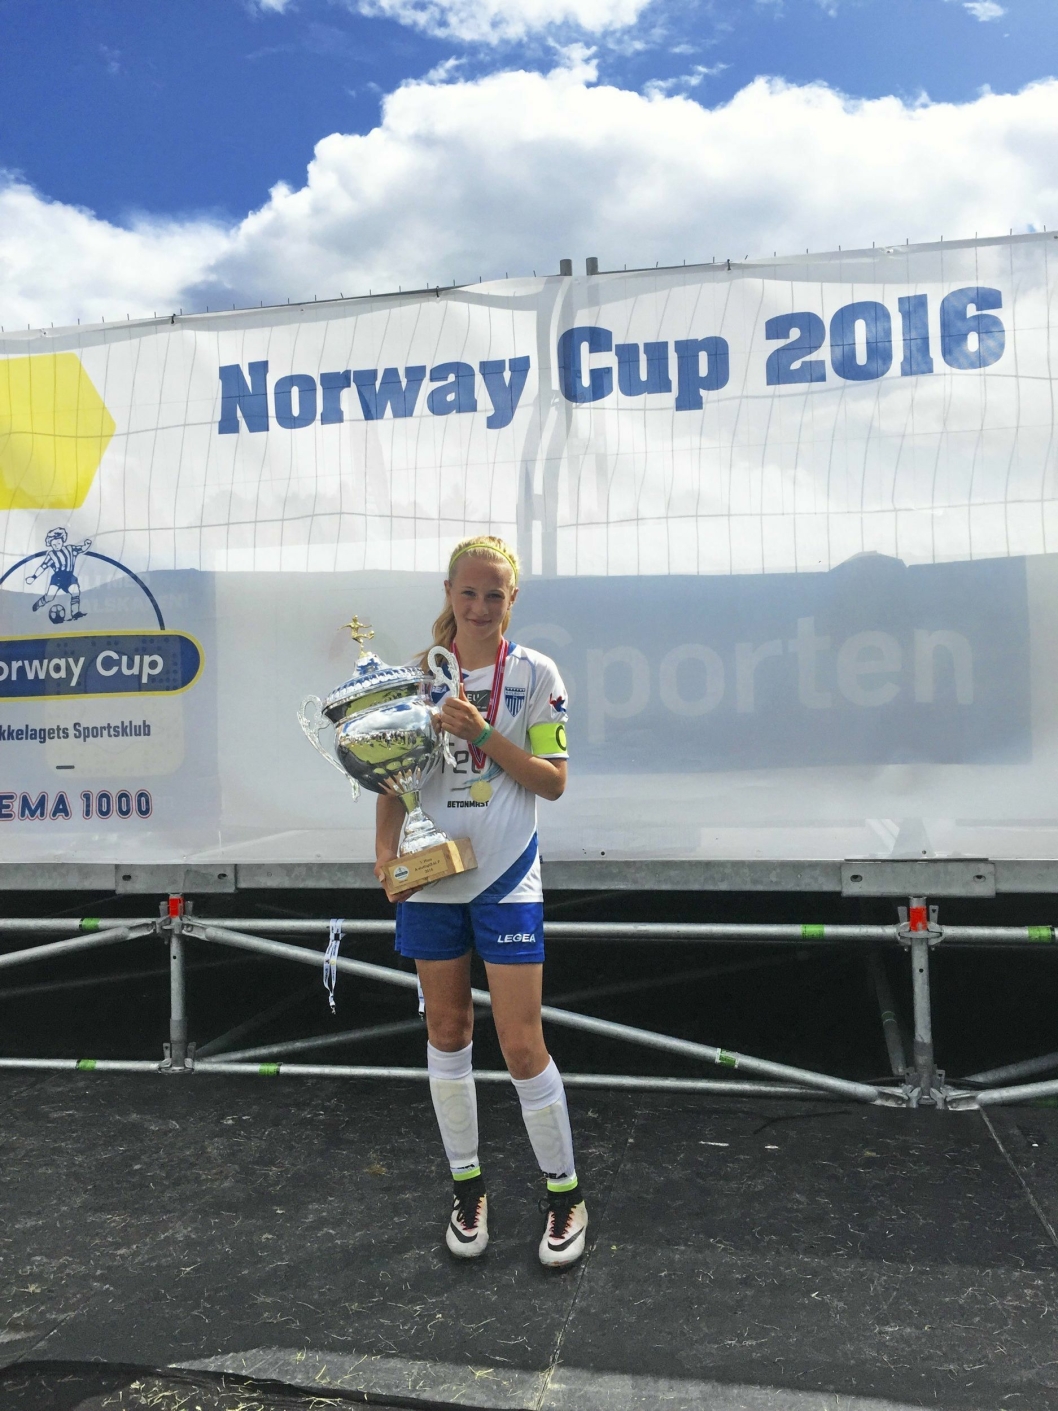 STORT: Fotballtalentet trekker frem resultatene under Norway Cup som noen av høydepunktene i fotballkarrieren så langt.